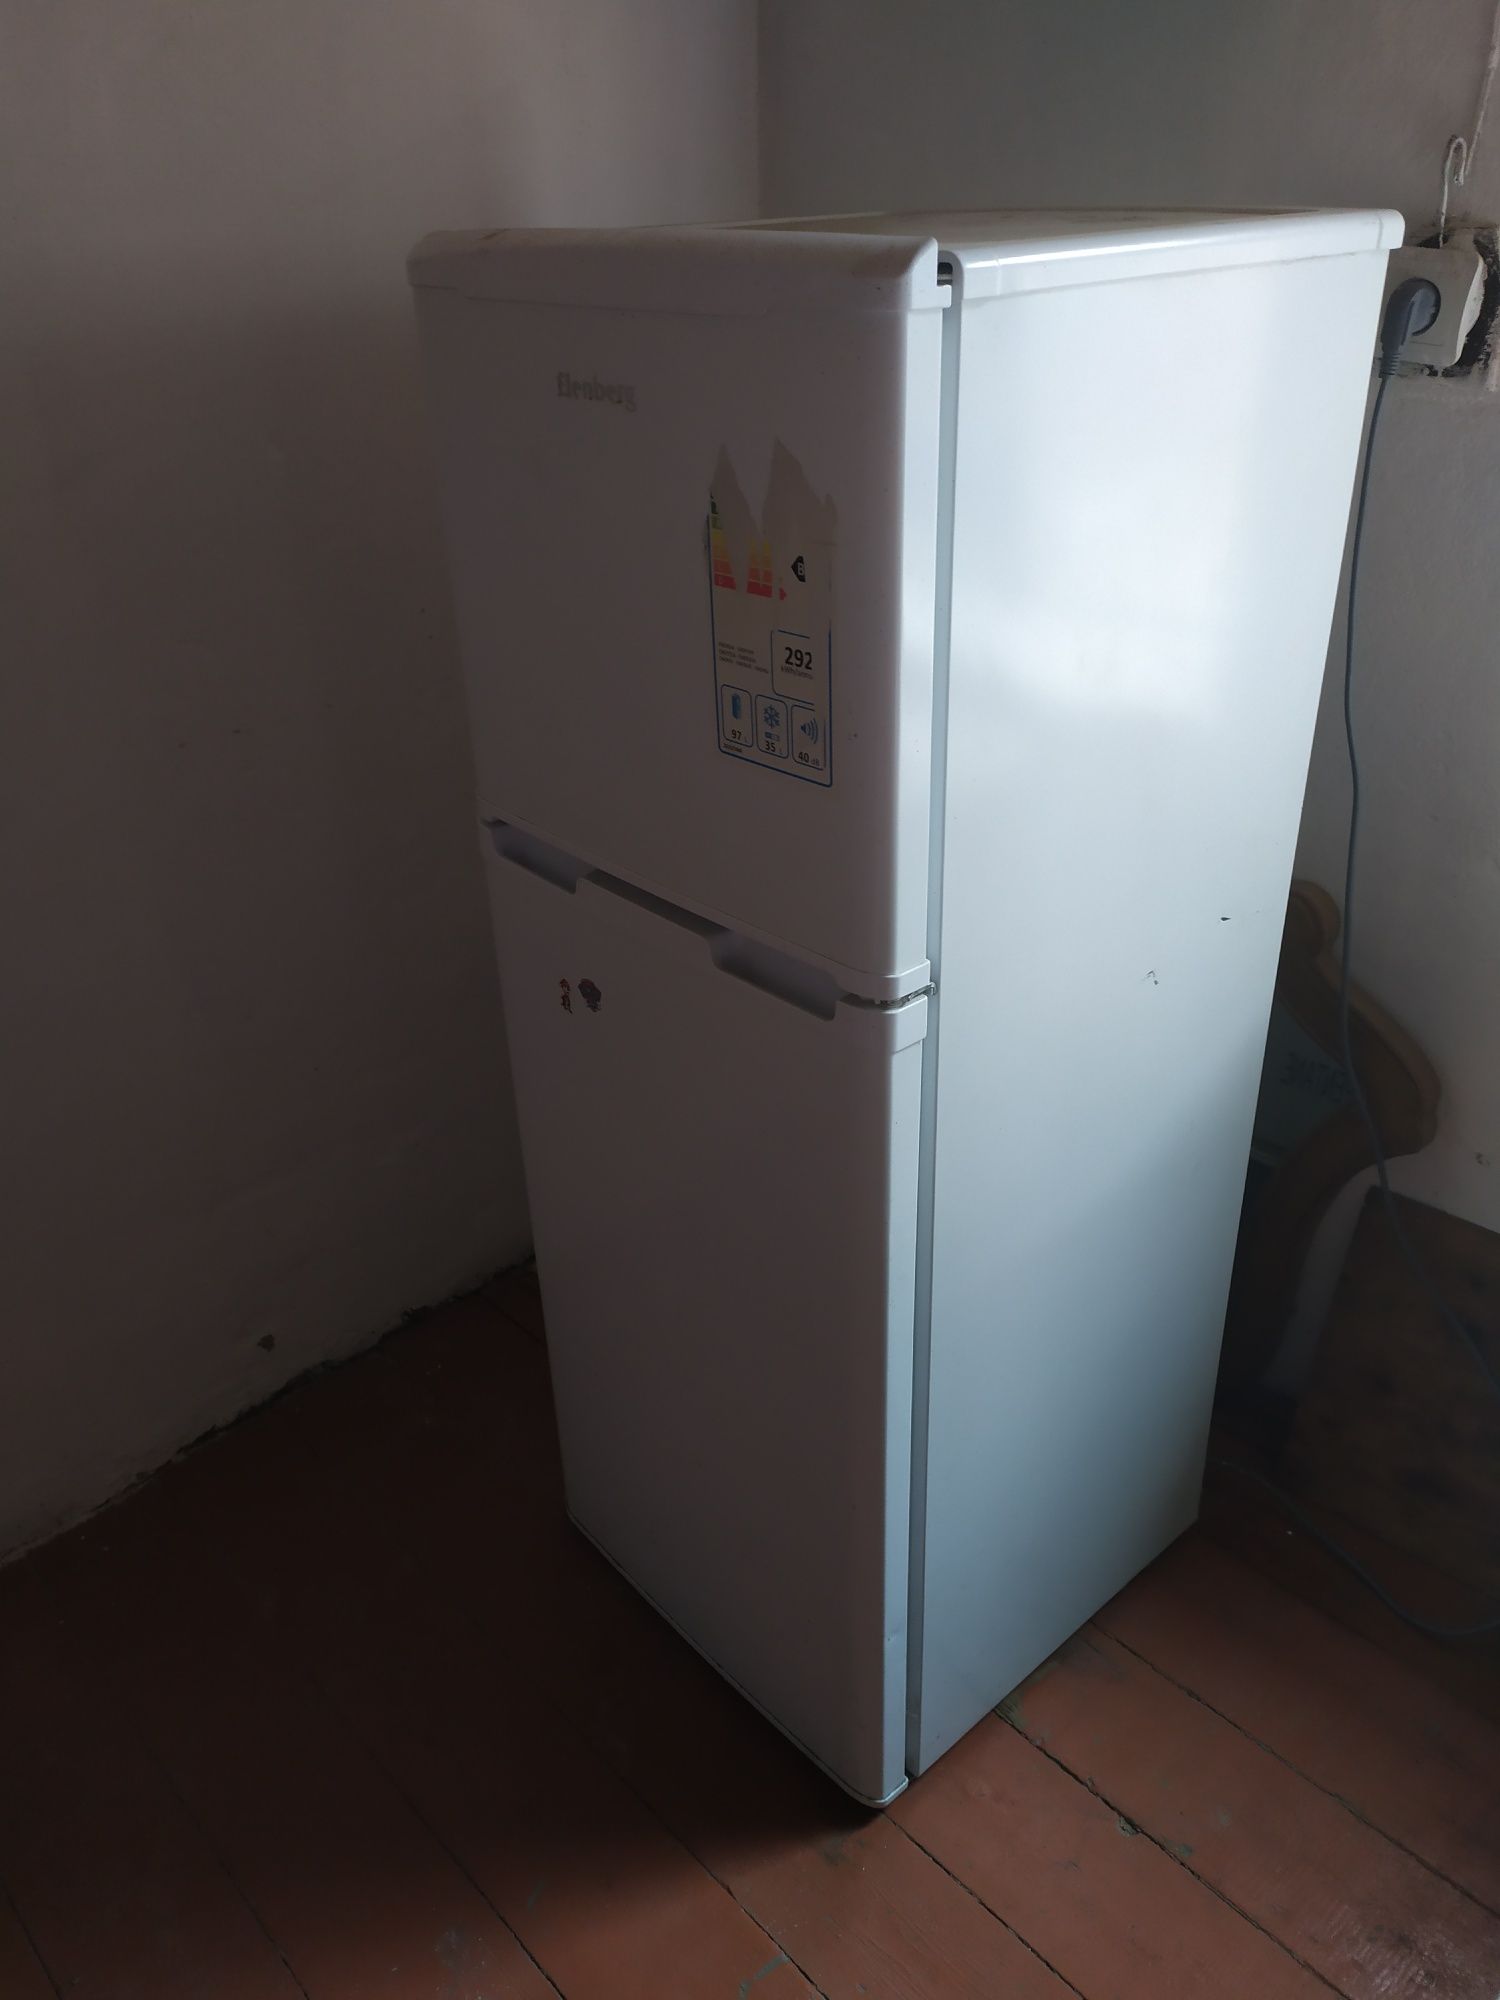 Холодильник еленберг